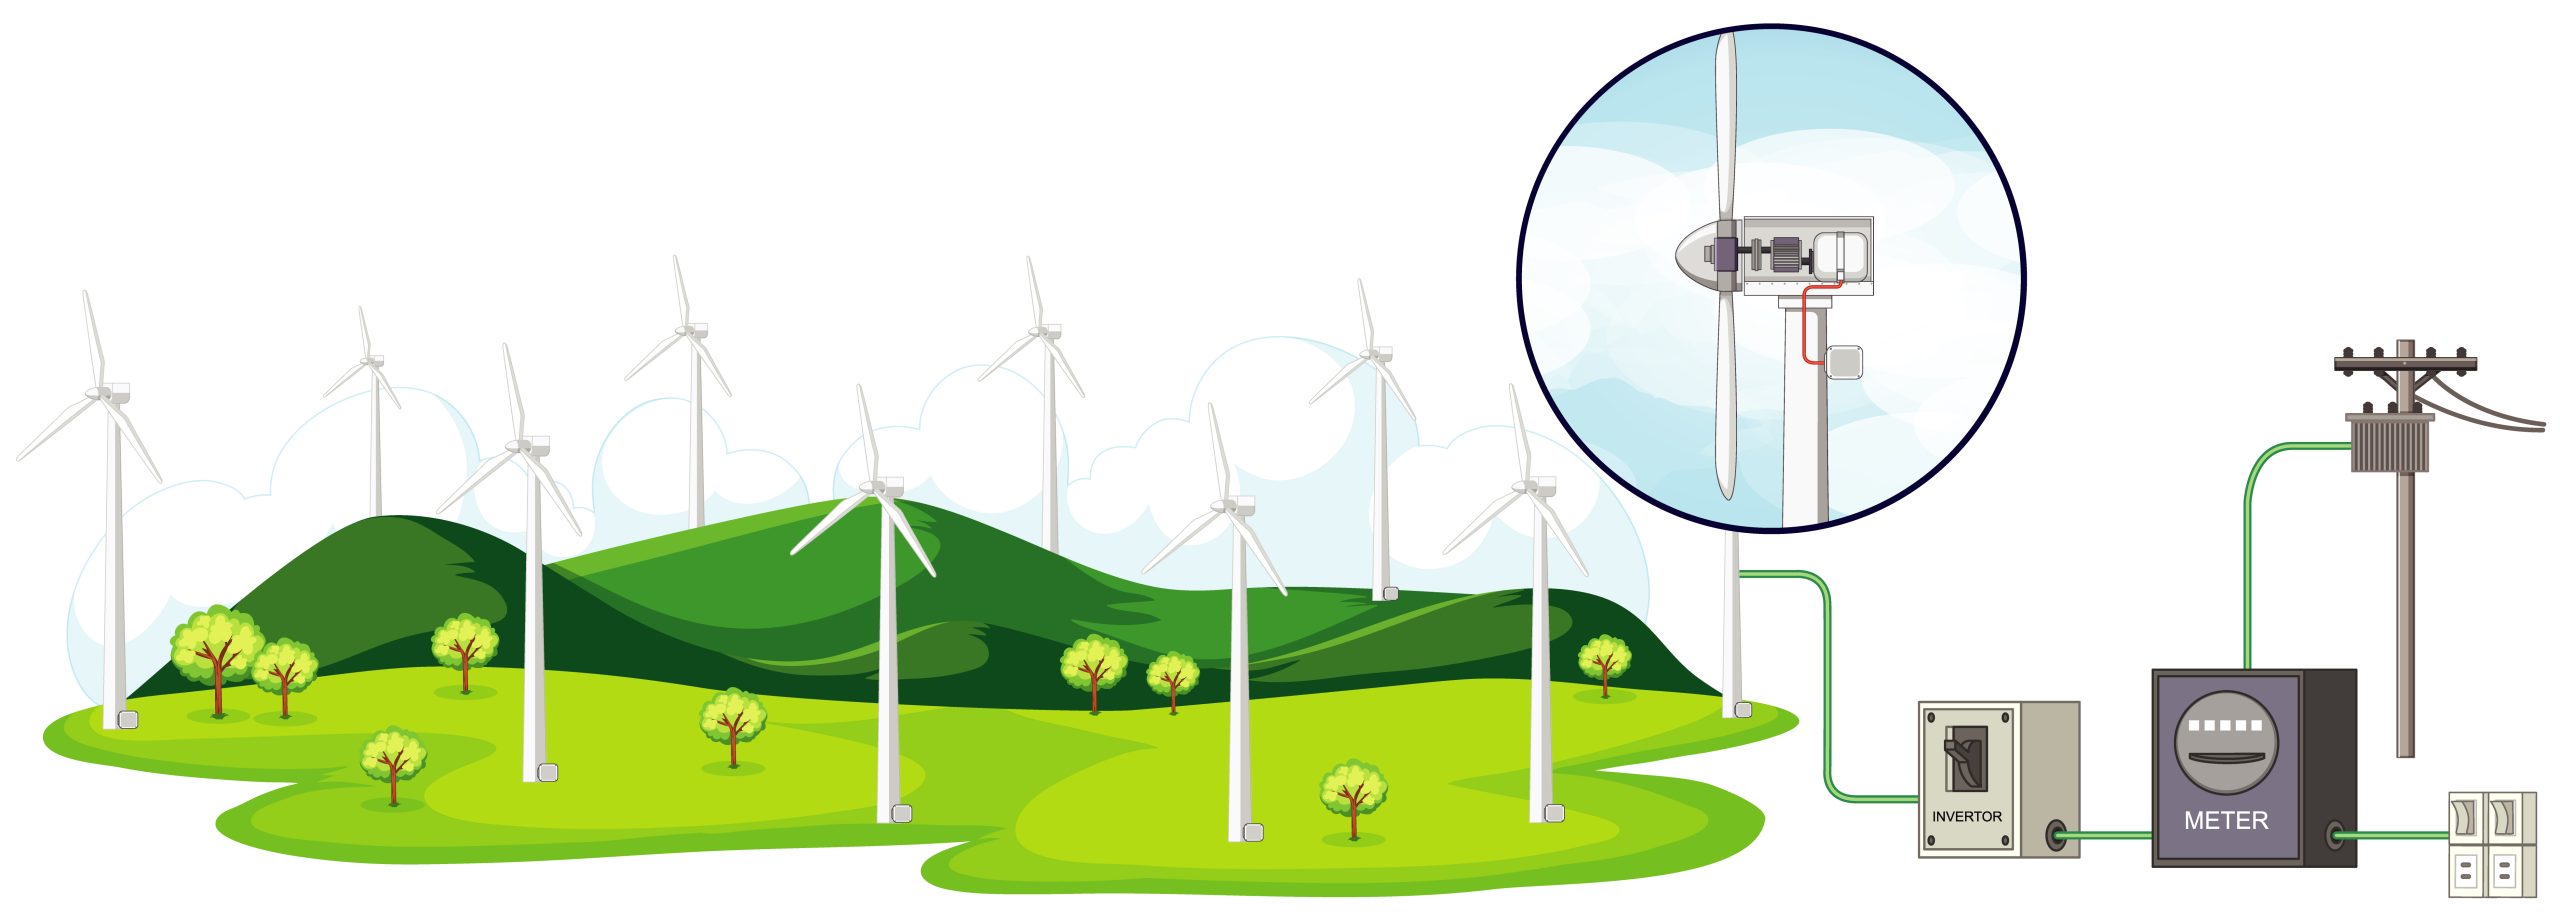 Ilustração da importância dos aerogeradores no processo de geração de energia eolica 